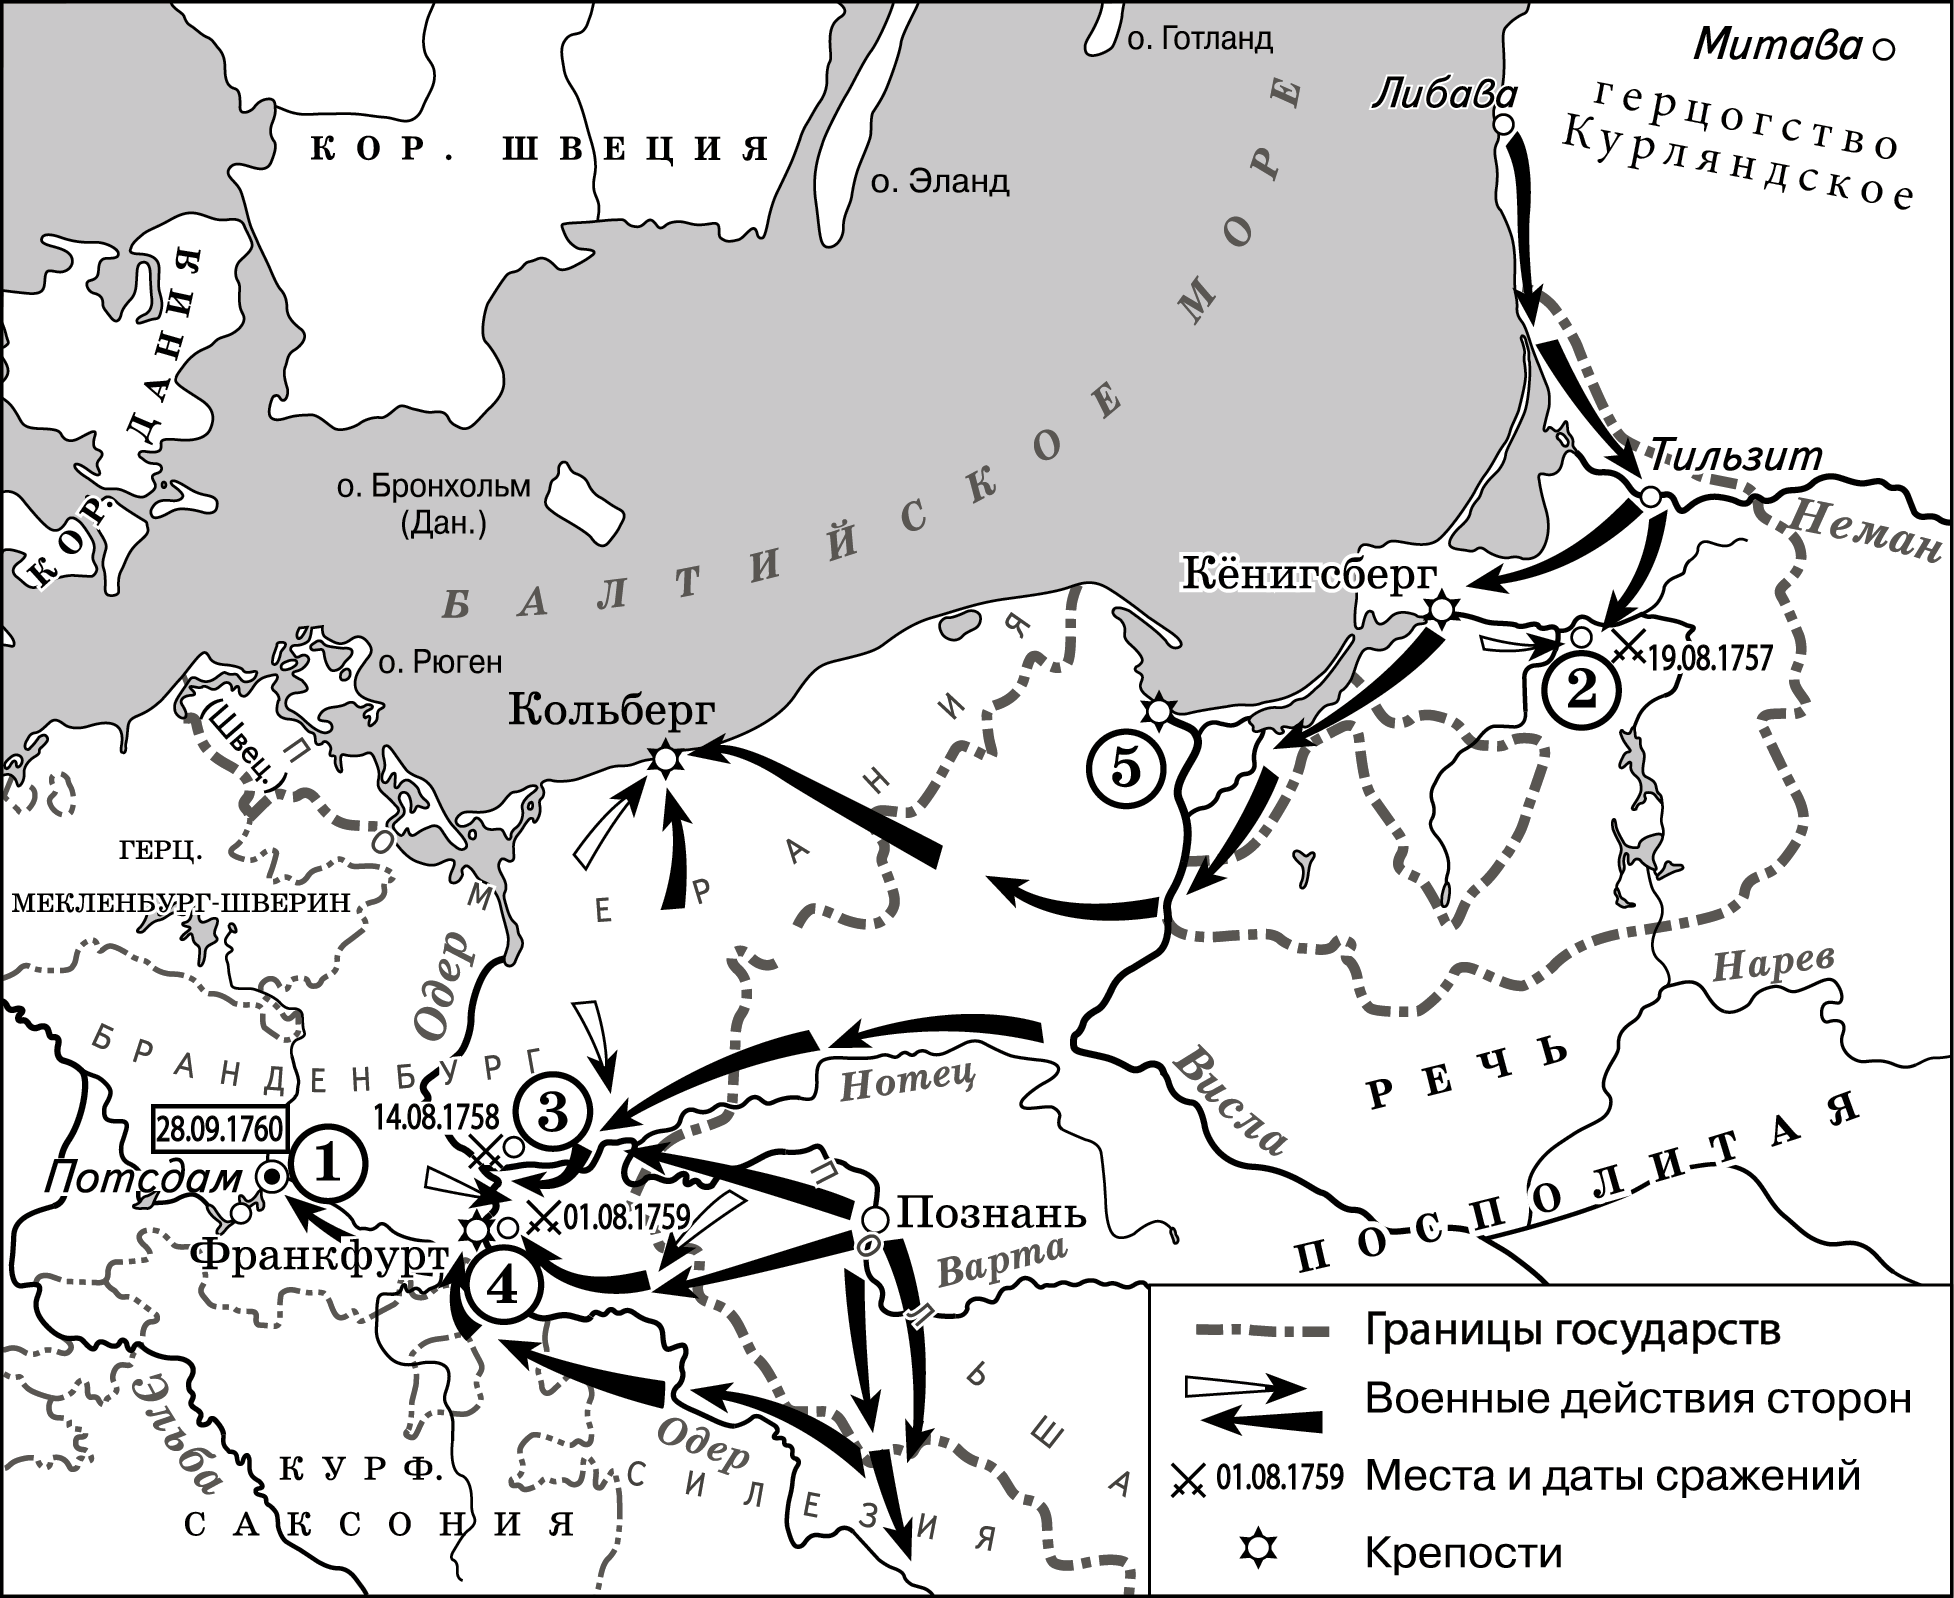 Подпишите на карте города кунерсдорф и берлин. Карта семилетней войны ЕГЭ история.